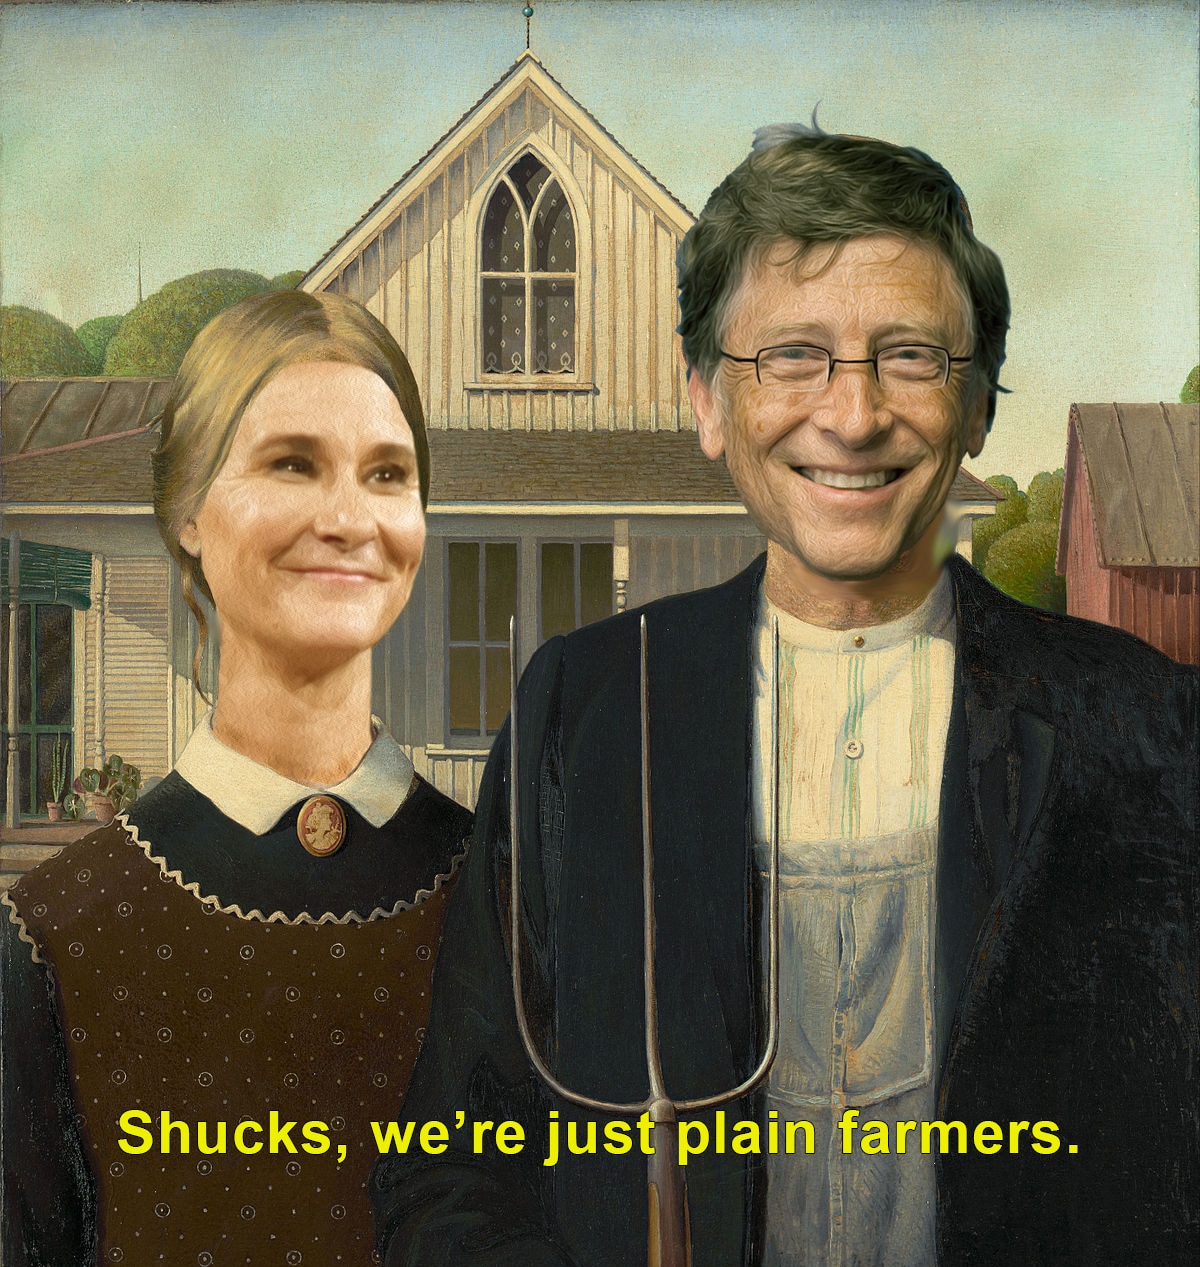 Farmer Bill Neo-feudalism